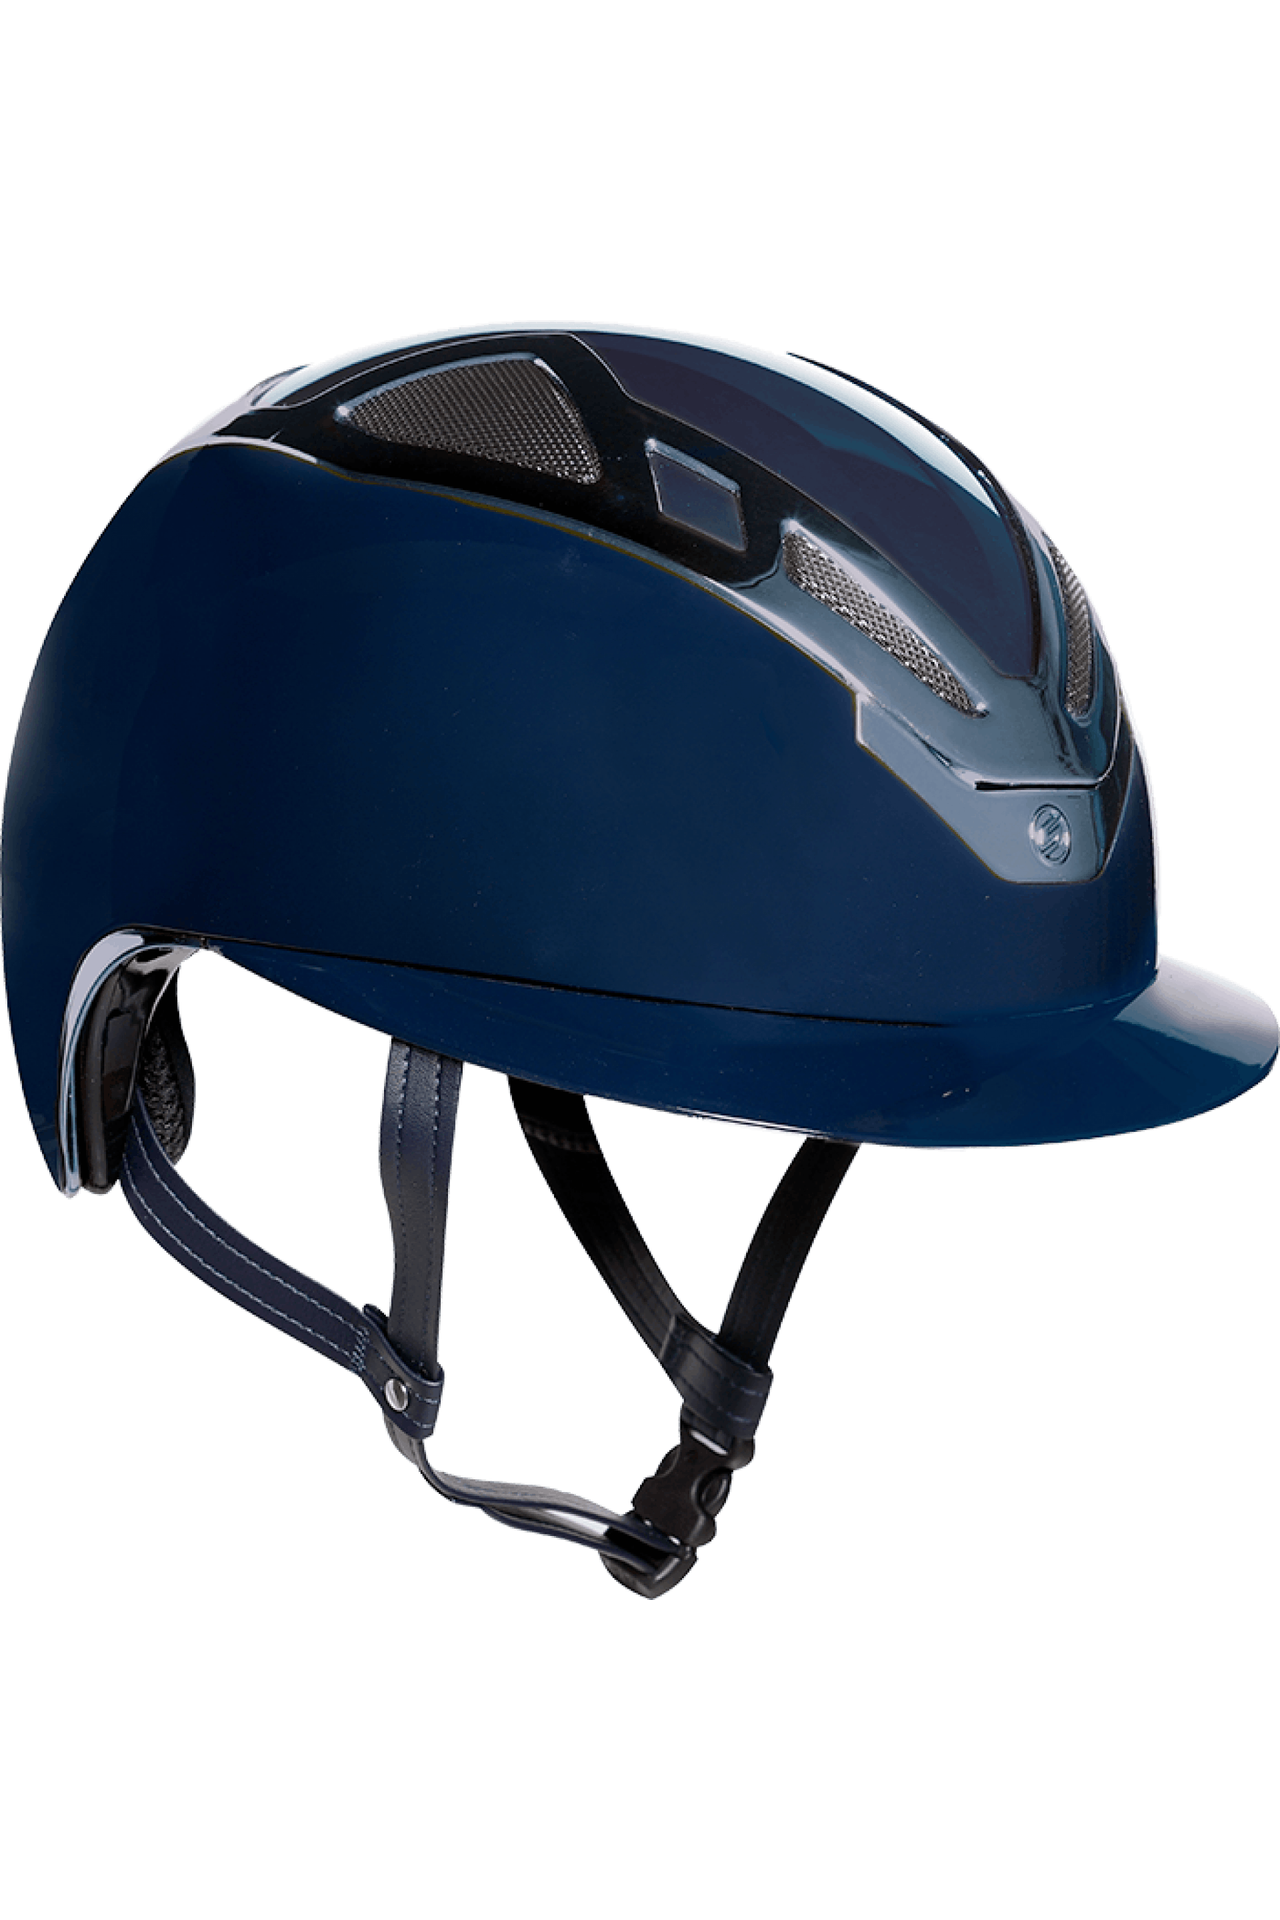 Suomy Italia Apex Chrome Blue Navy Gloss Helmets 